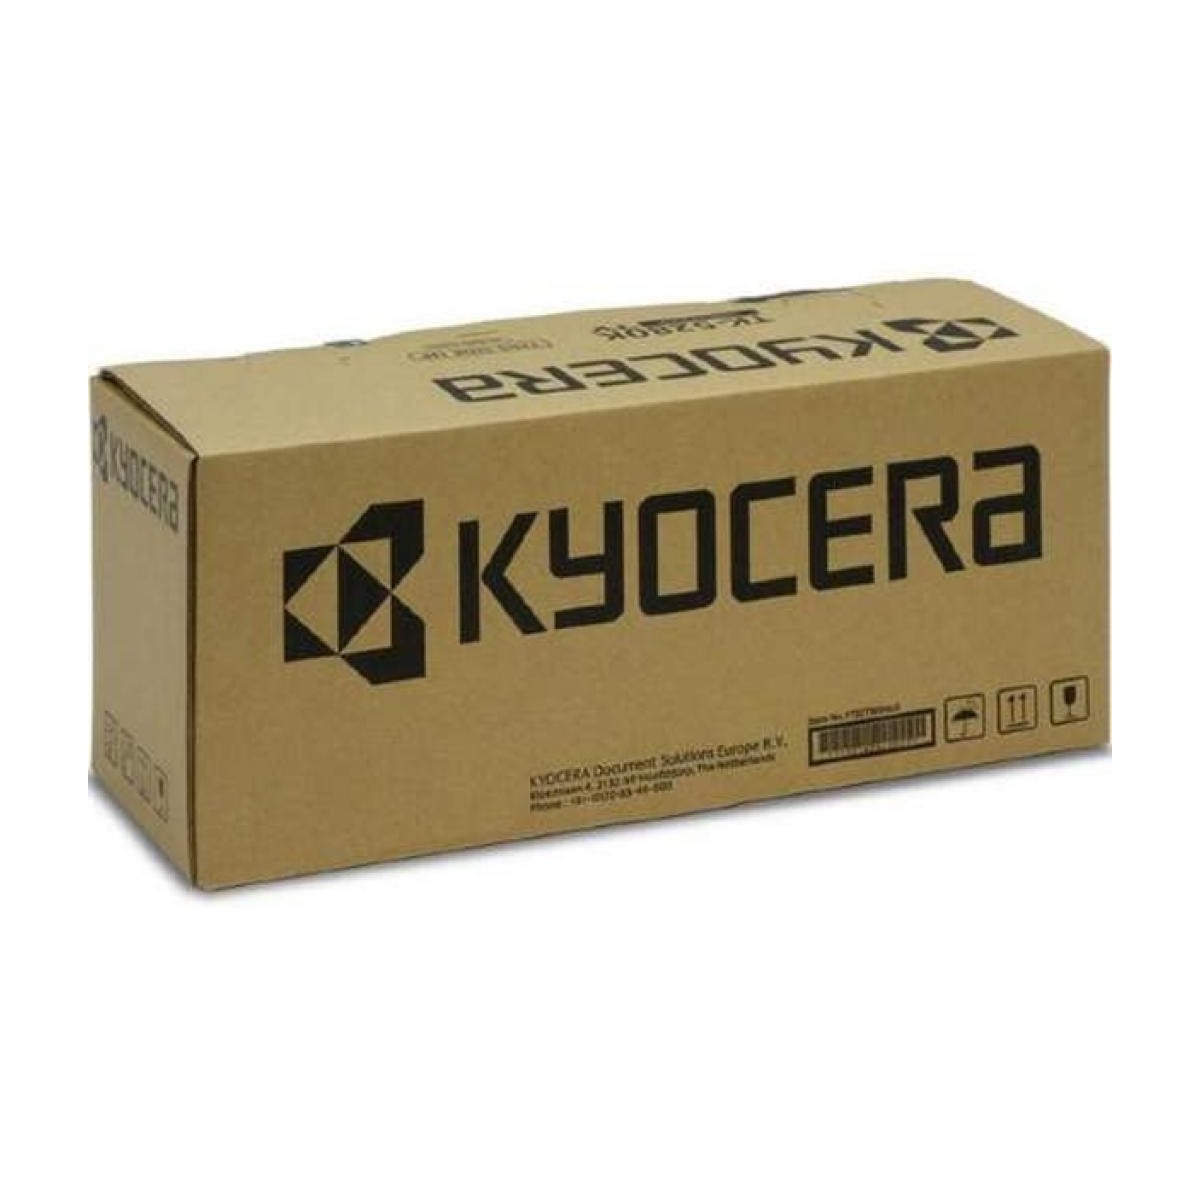 Kyocera DK-8115 (302P393060)